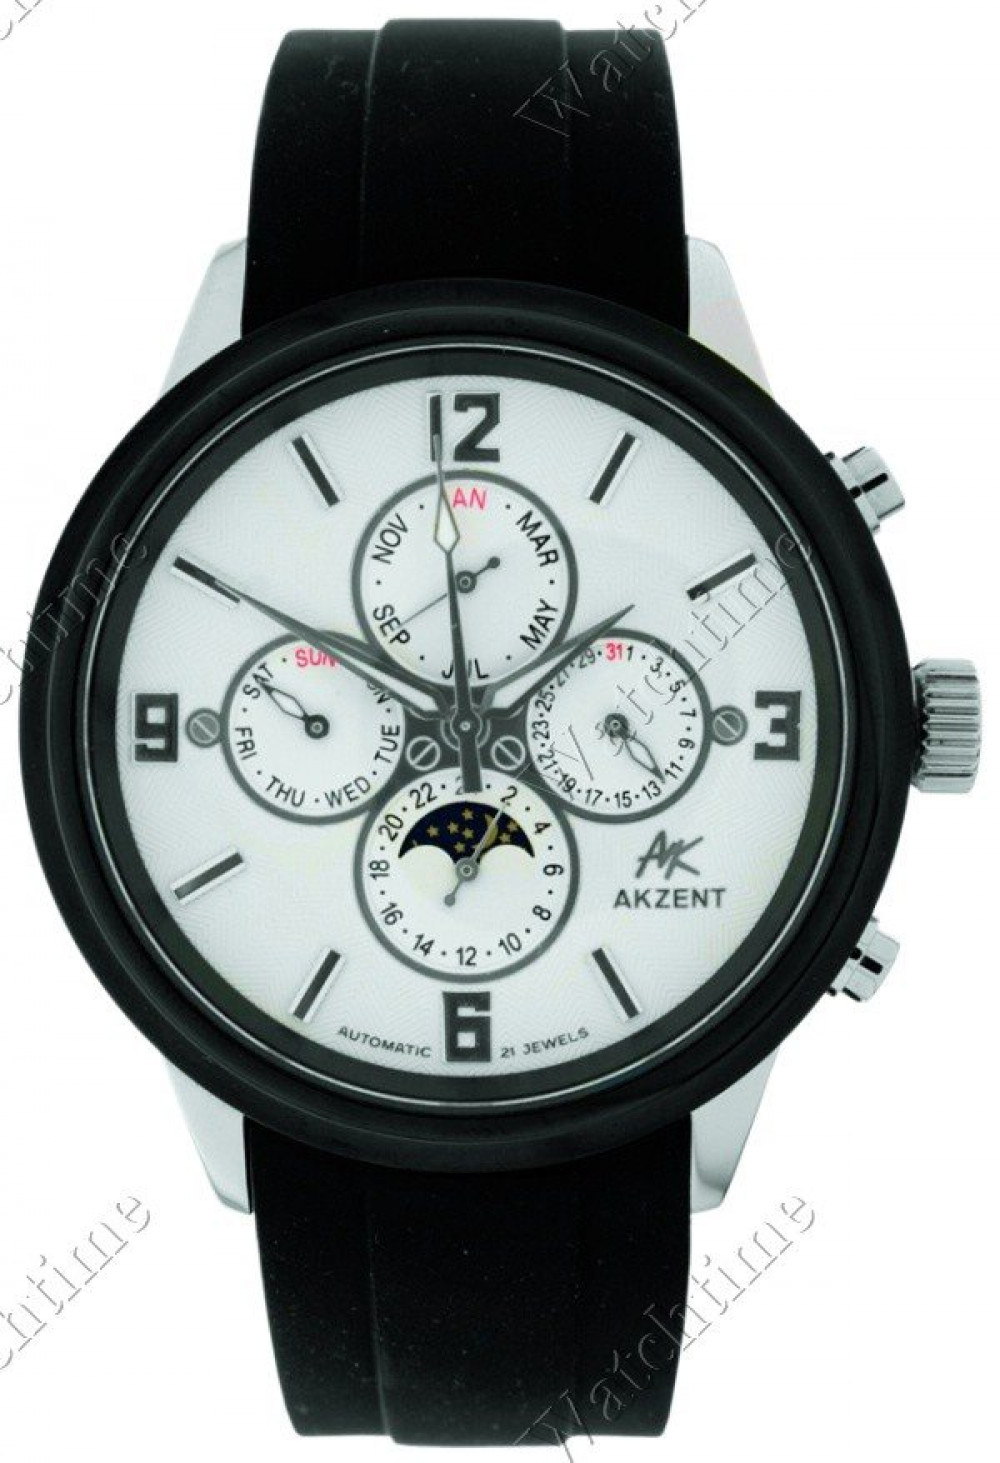 Zegarek firmy Akzent, model Herrenuhr